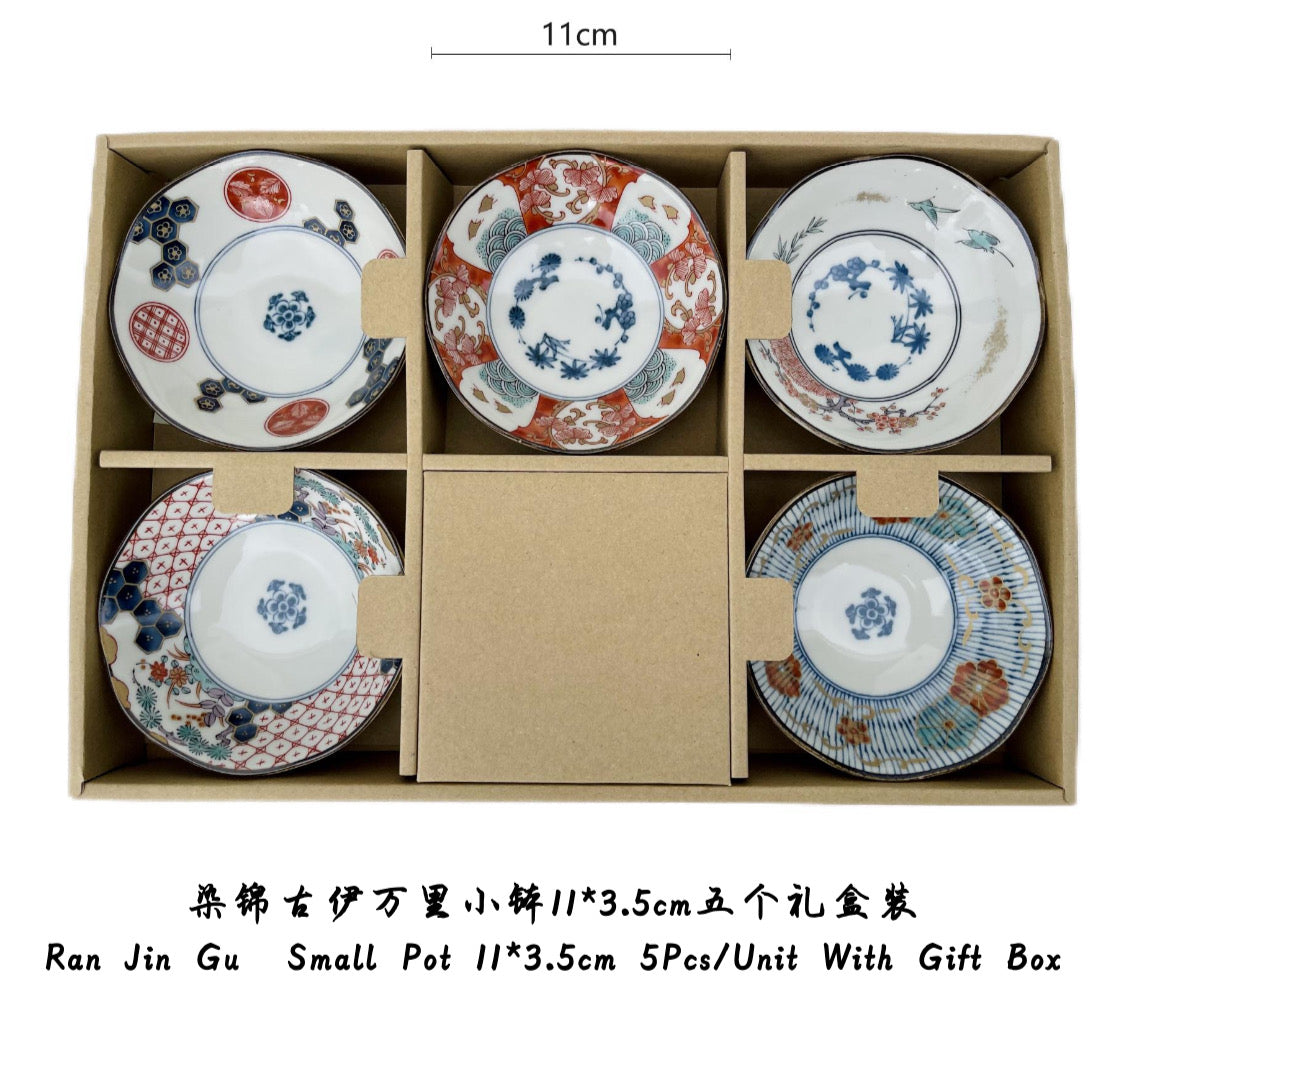 Japan Ran Jin Gu 5Pcs/Unit With Gift Box